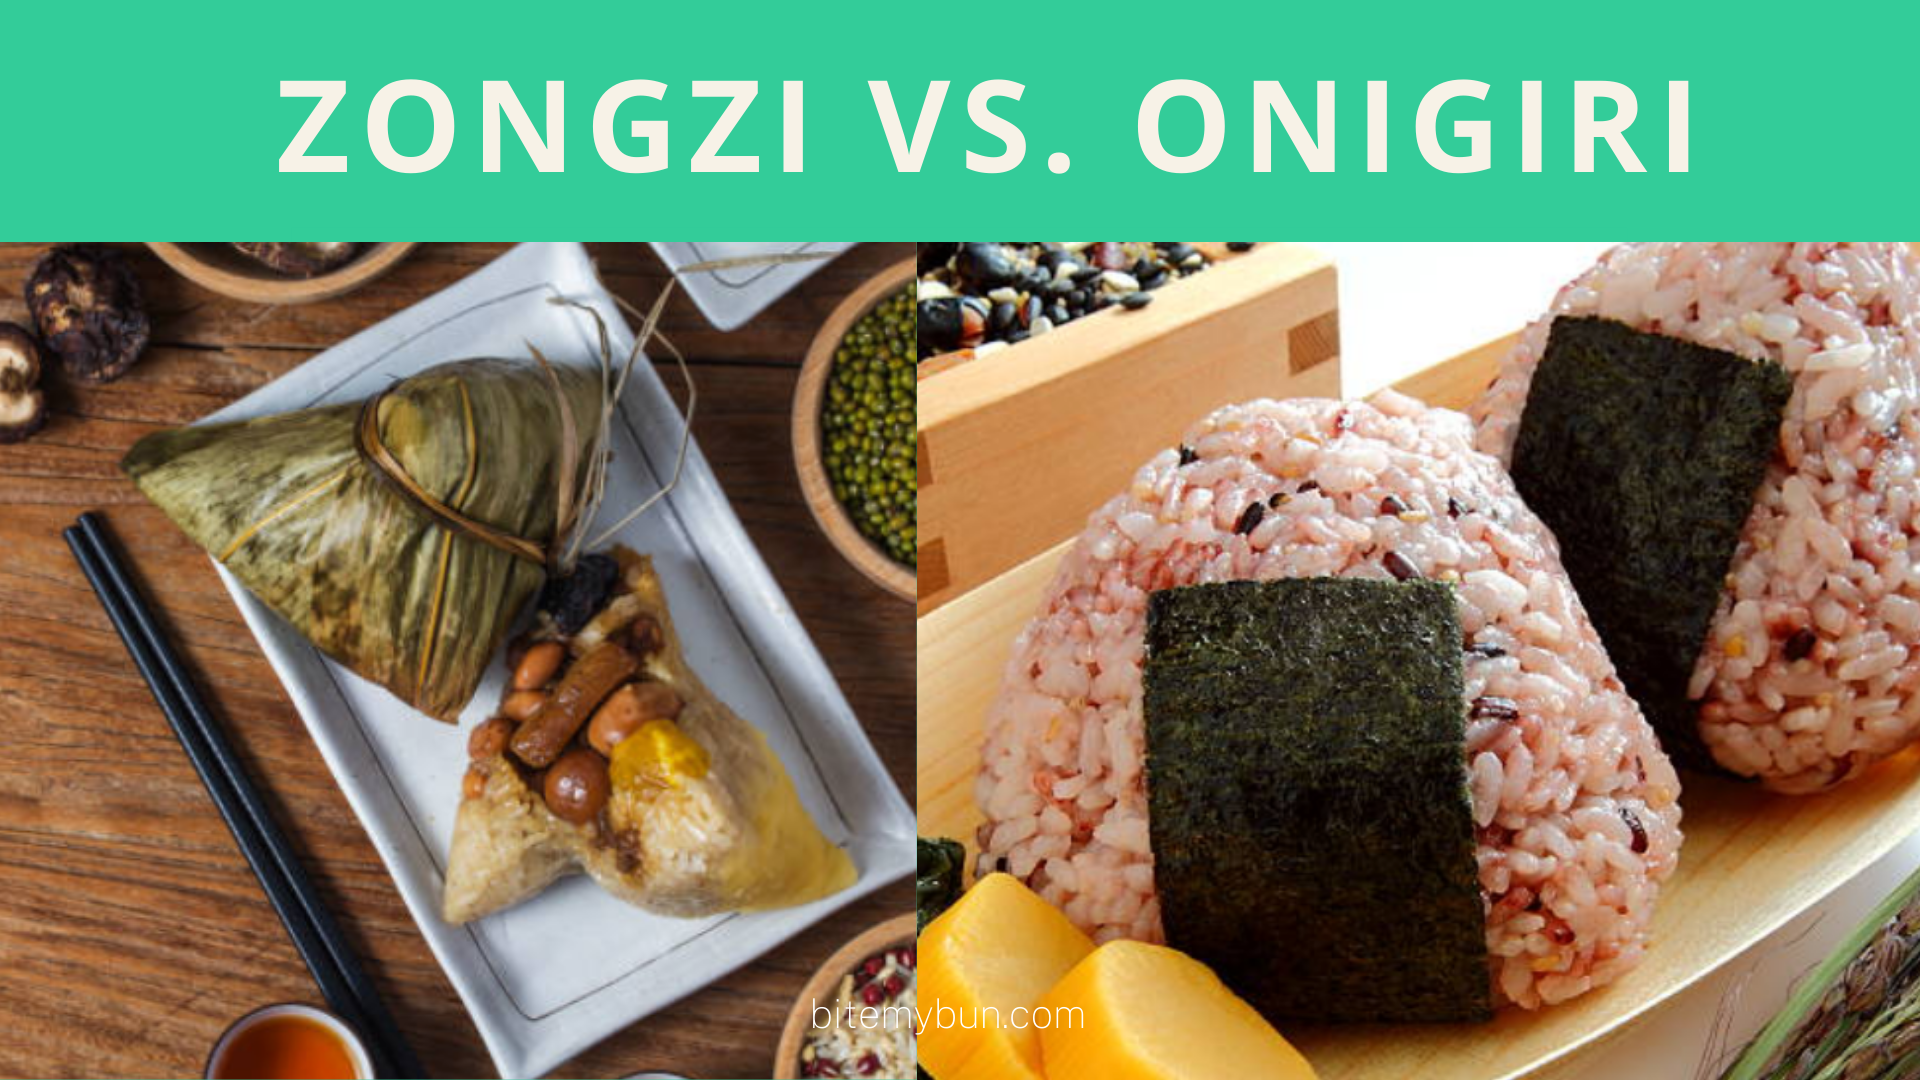 Zongzi vs. onigiri | Here's how to tell them apart